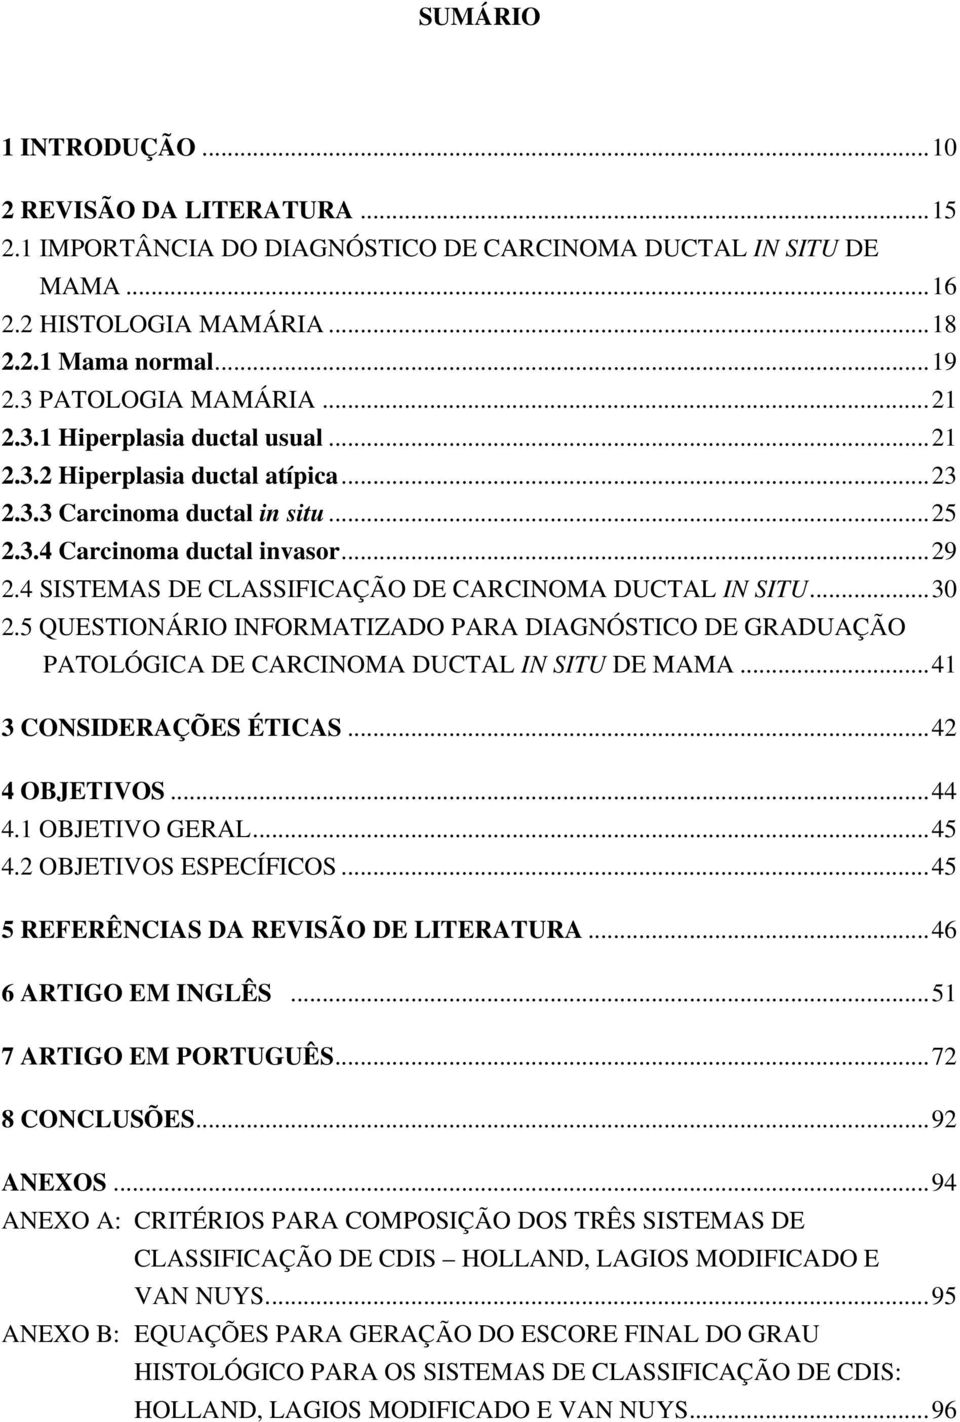 4 SISTEMAS DE CLASSIFICAÇÃO DE CARCINOMA DUCTAL IN SITU...30 2.5 QUESTIONÁRIO INFORMATIZADO PARA DIAGNÓSTICO DE GRADUAÇÃO PATOLÓGICA DE CARCINOMA DUCTAL IN SITU DE MAMA...41 3 CONSIDERAÇÕES ÉTICAS.